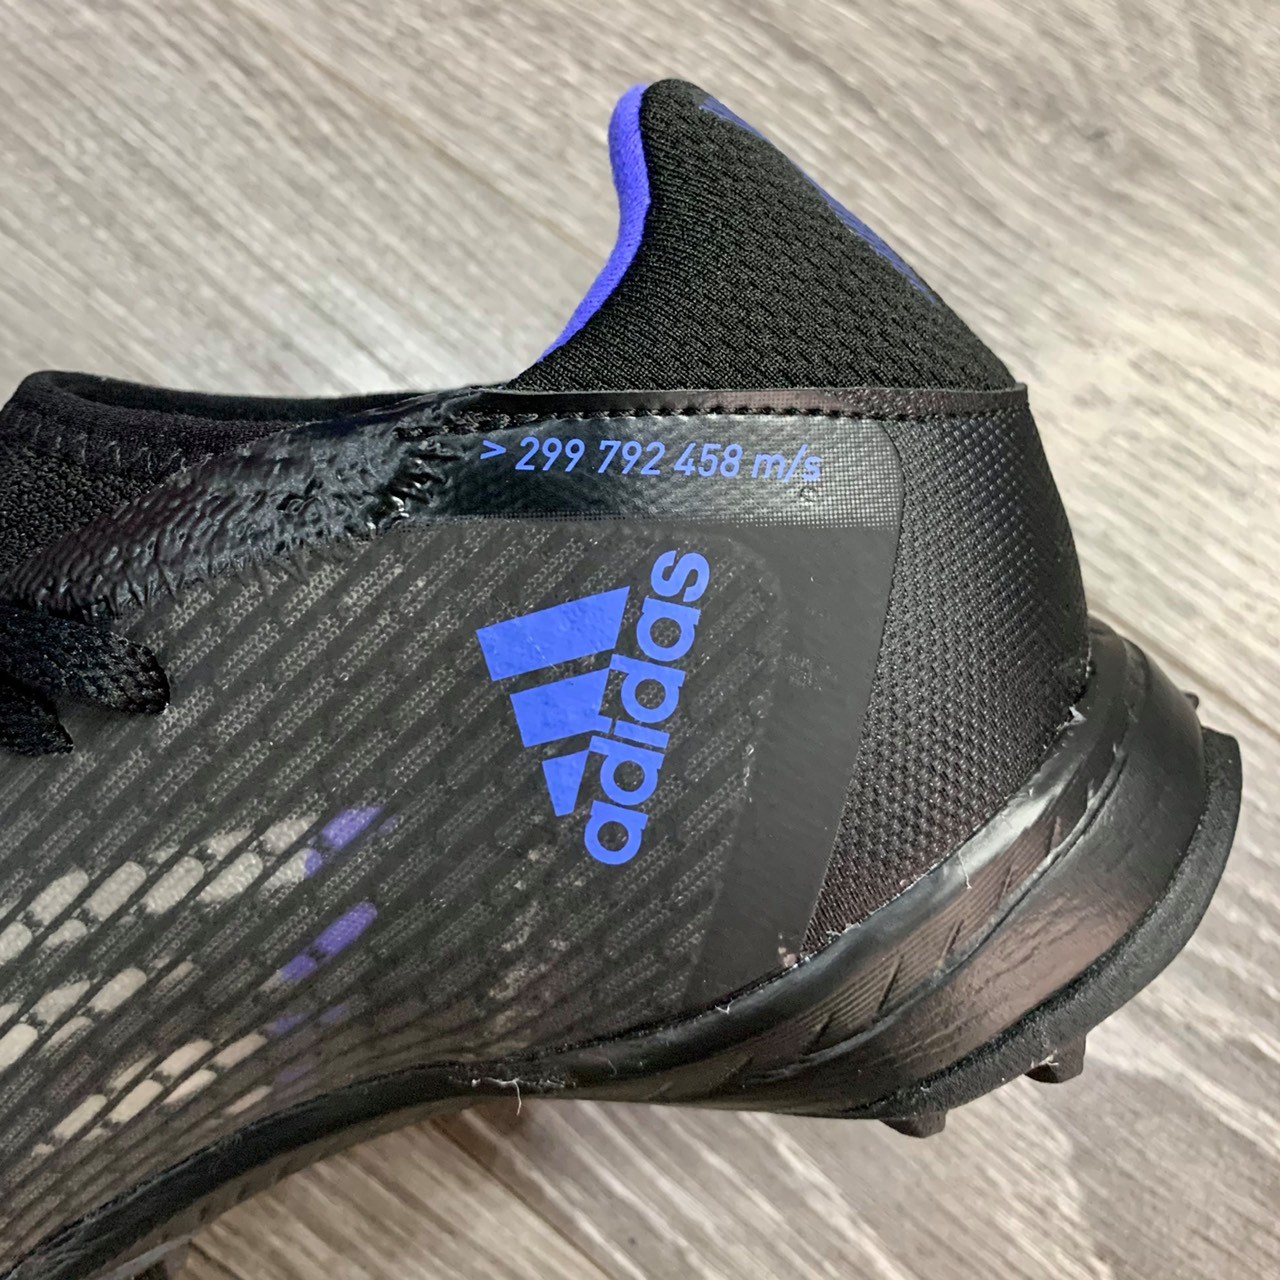 Giày đá bóng Adidas X Speedflow.3